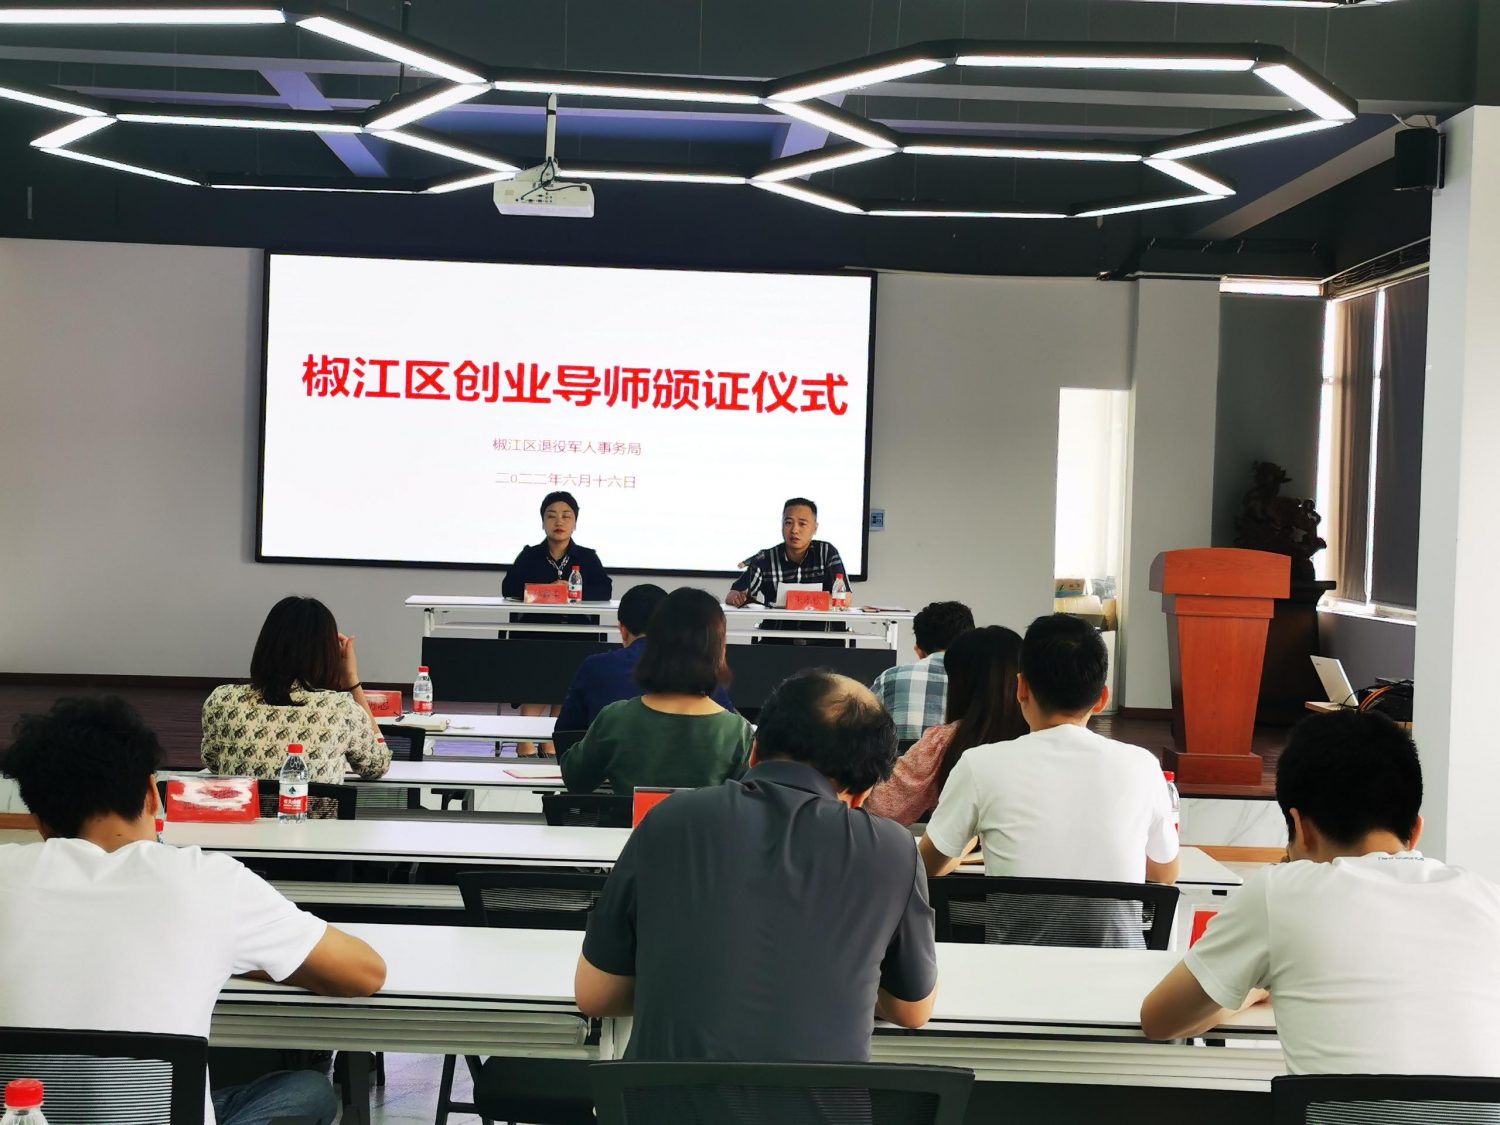 热烈祝贺春华教育集团黄杨勇老师受聘为“台州市退役军人就业创业导师”